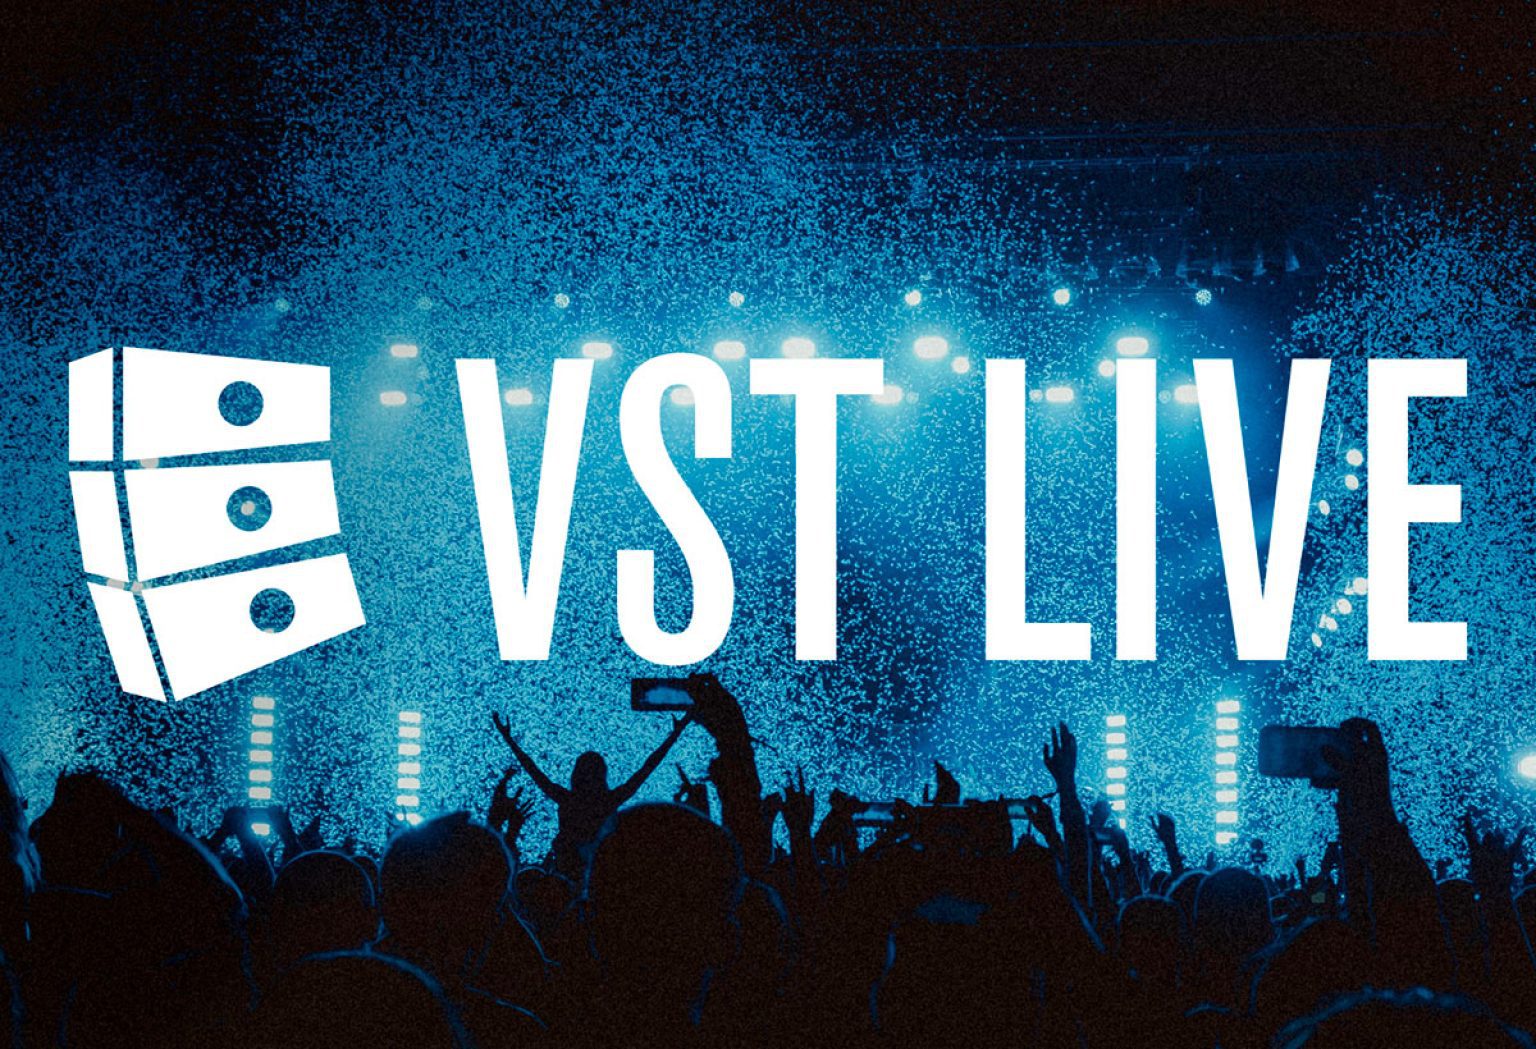 download Steinberg VST Live Pro 1.1.80